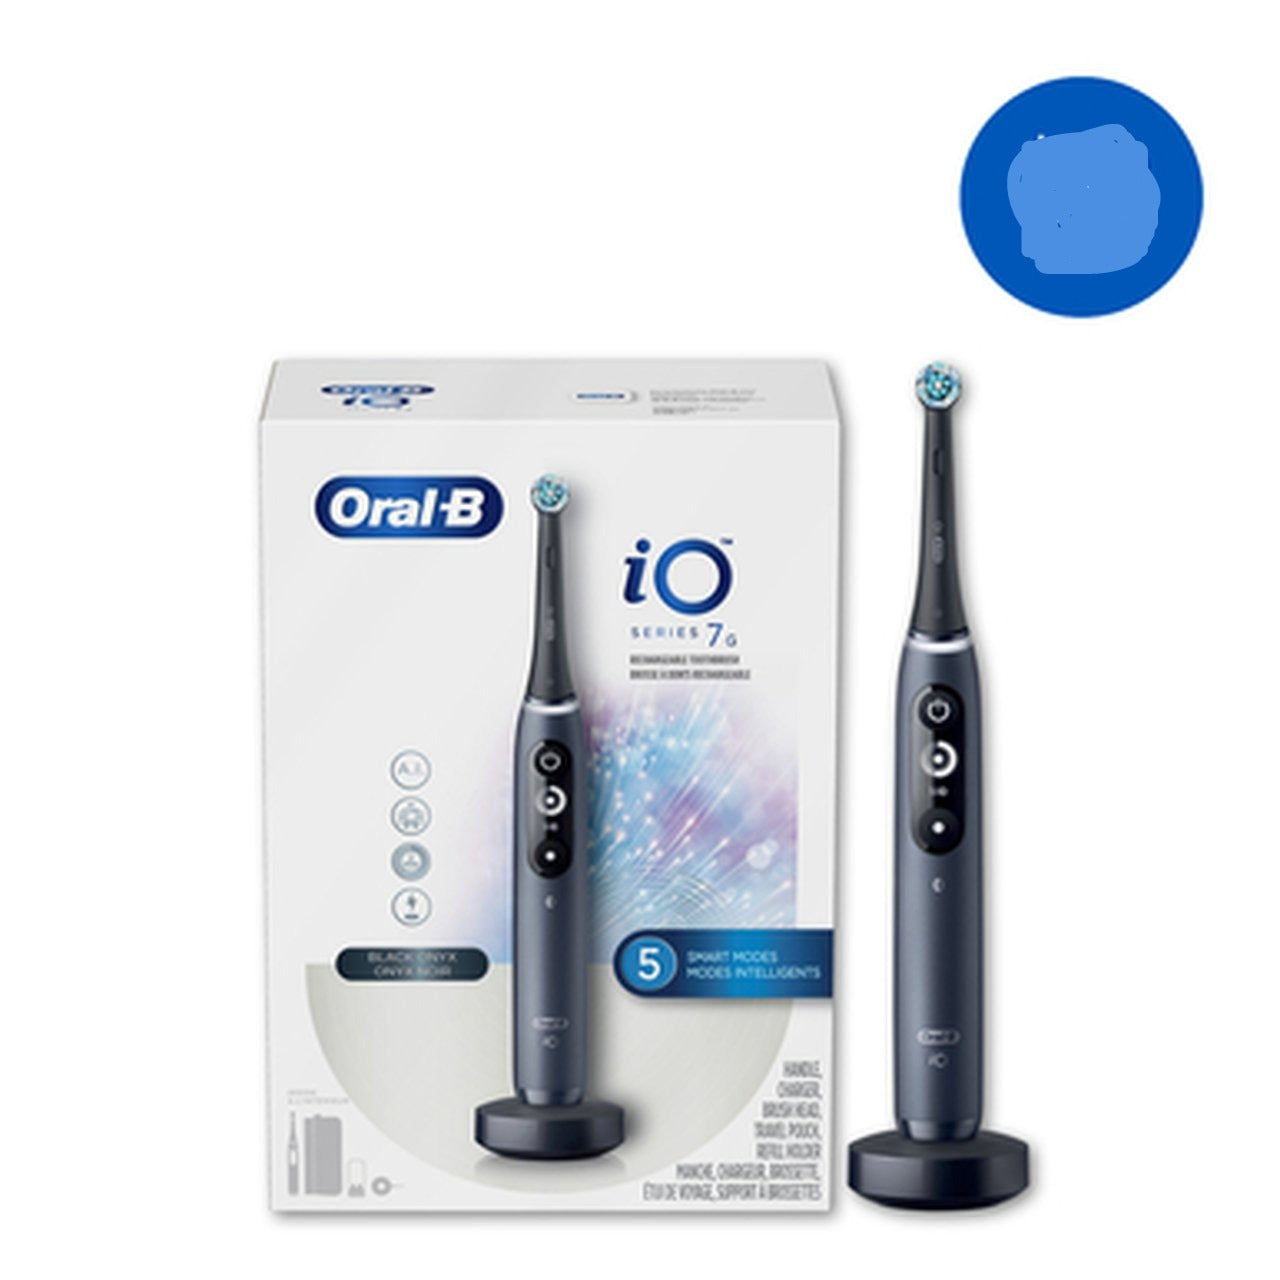 Oral B iO Series 7 Electric Toothbrush, Black Onyx